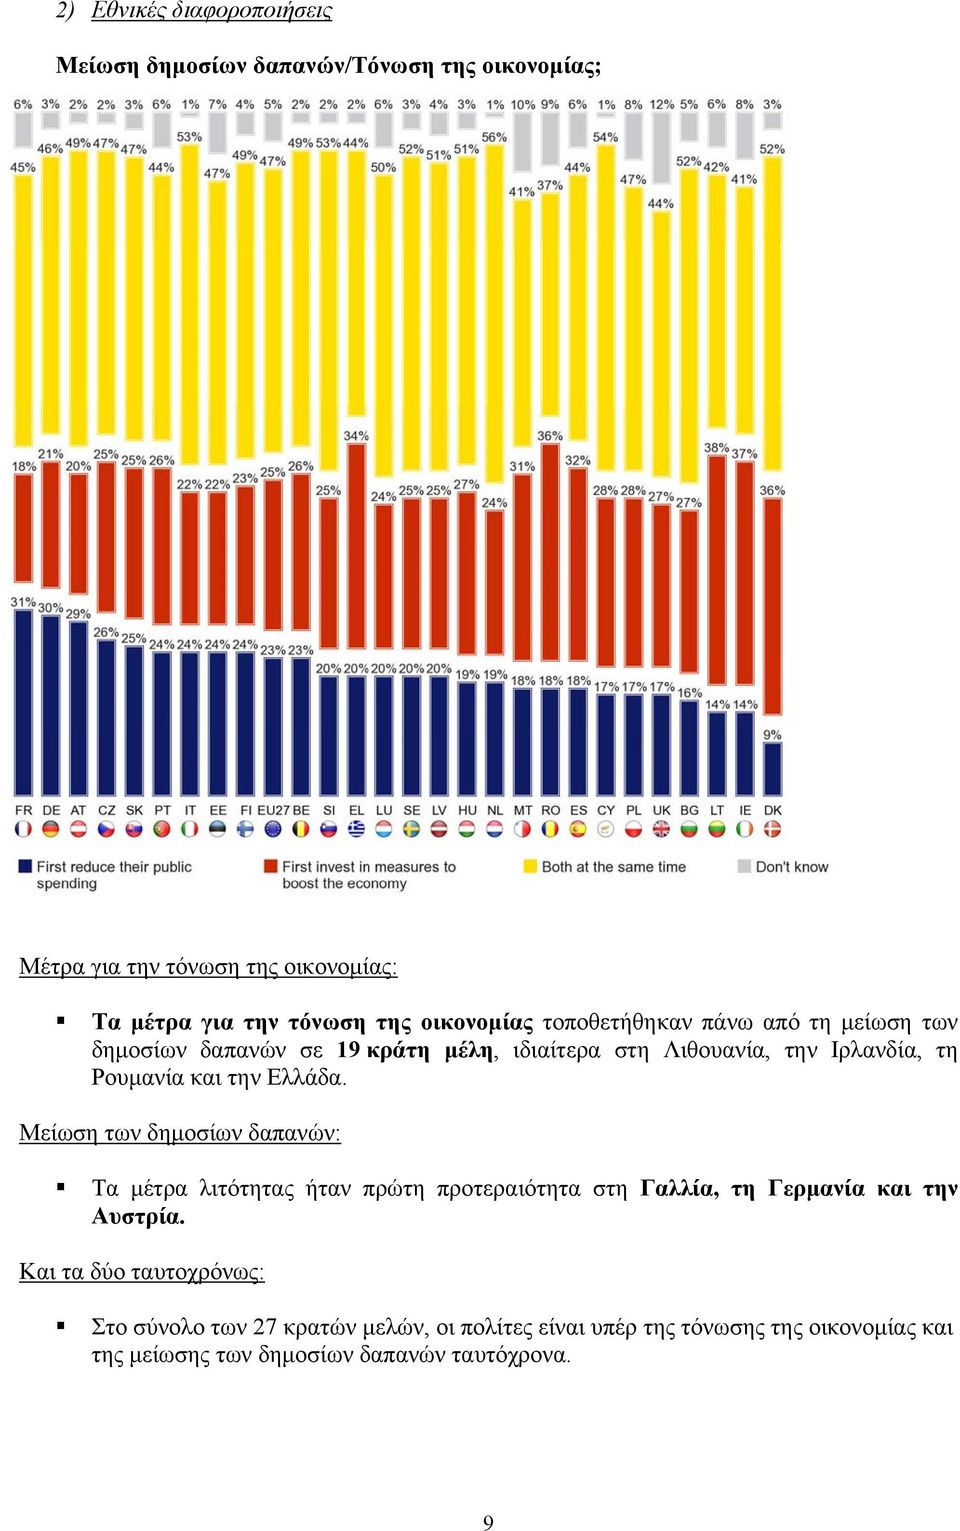 την Ελλάδα. Μείωση των δημοσίων δαπανών: Τα μέτρα λιτότητας ήταν πρώτη προτεραιότητα στη Γαλλία, τη Γερμανία και την Αυστρία.